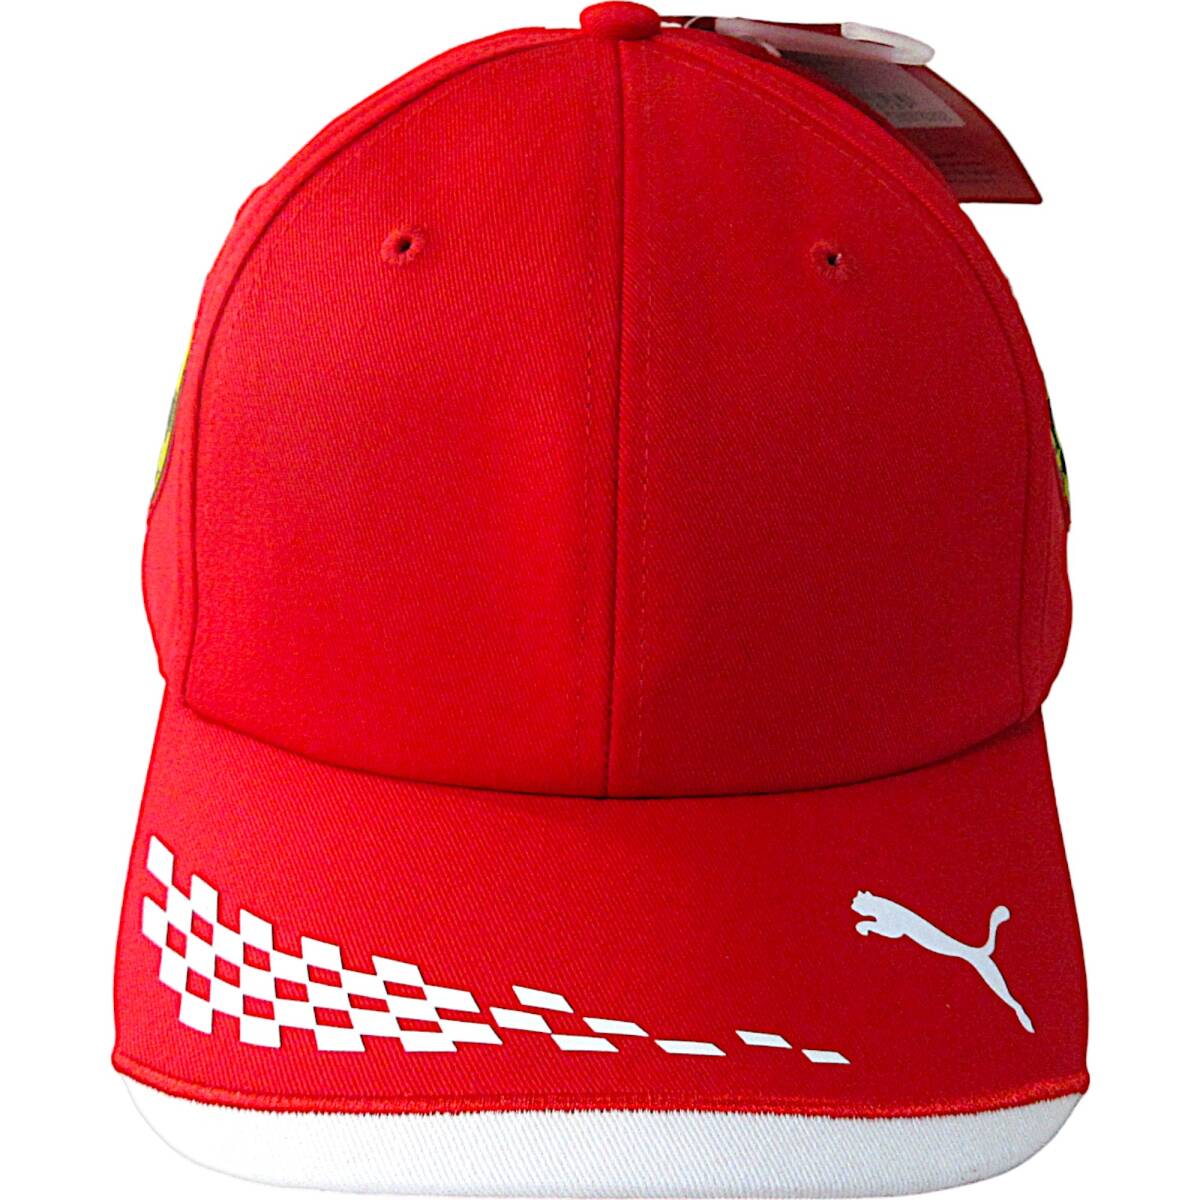 新品◆PUMA×Scuderia Ferrari◆フェラーリ レプリカ チーム キャップ 頭回り(57-60cm) レッド◆プーマ 帽子 022611◆J588aの画像2